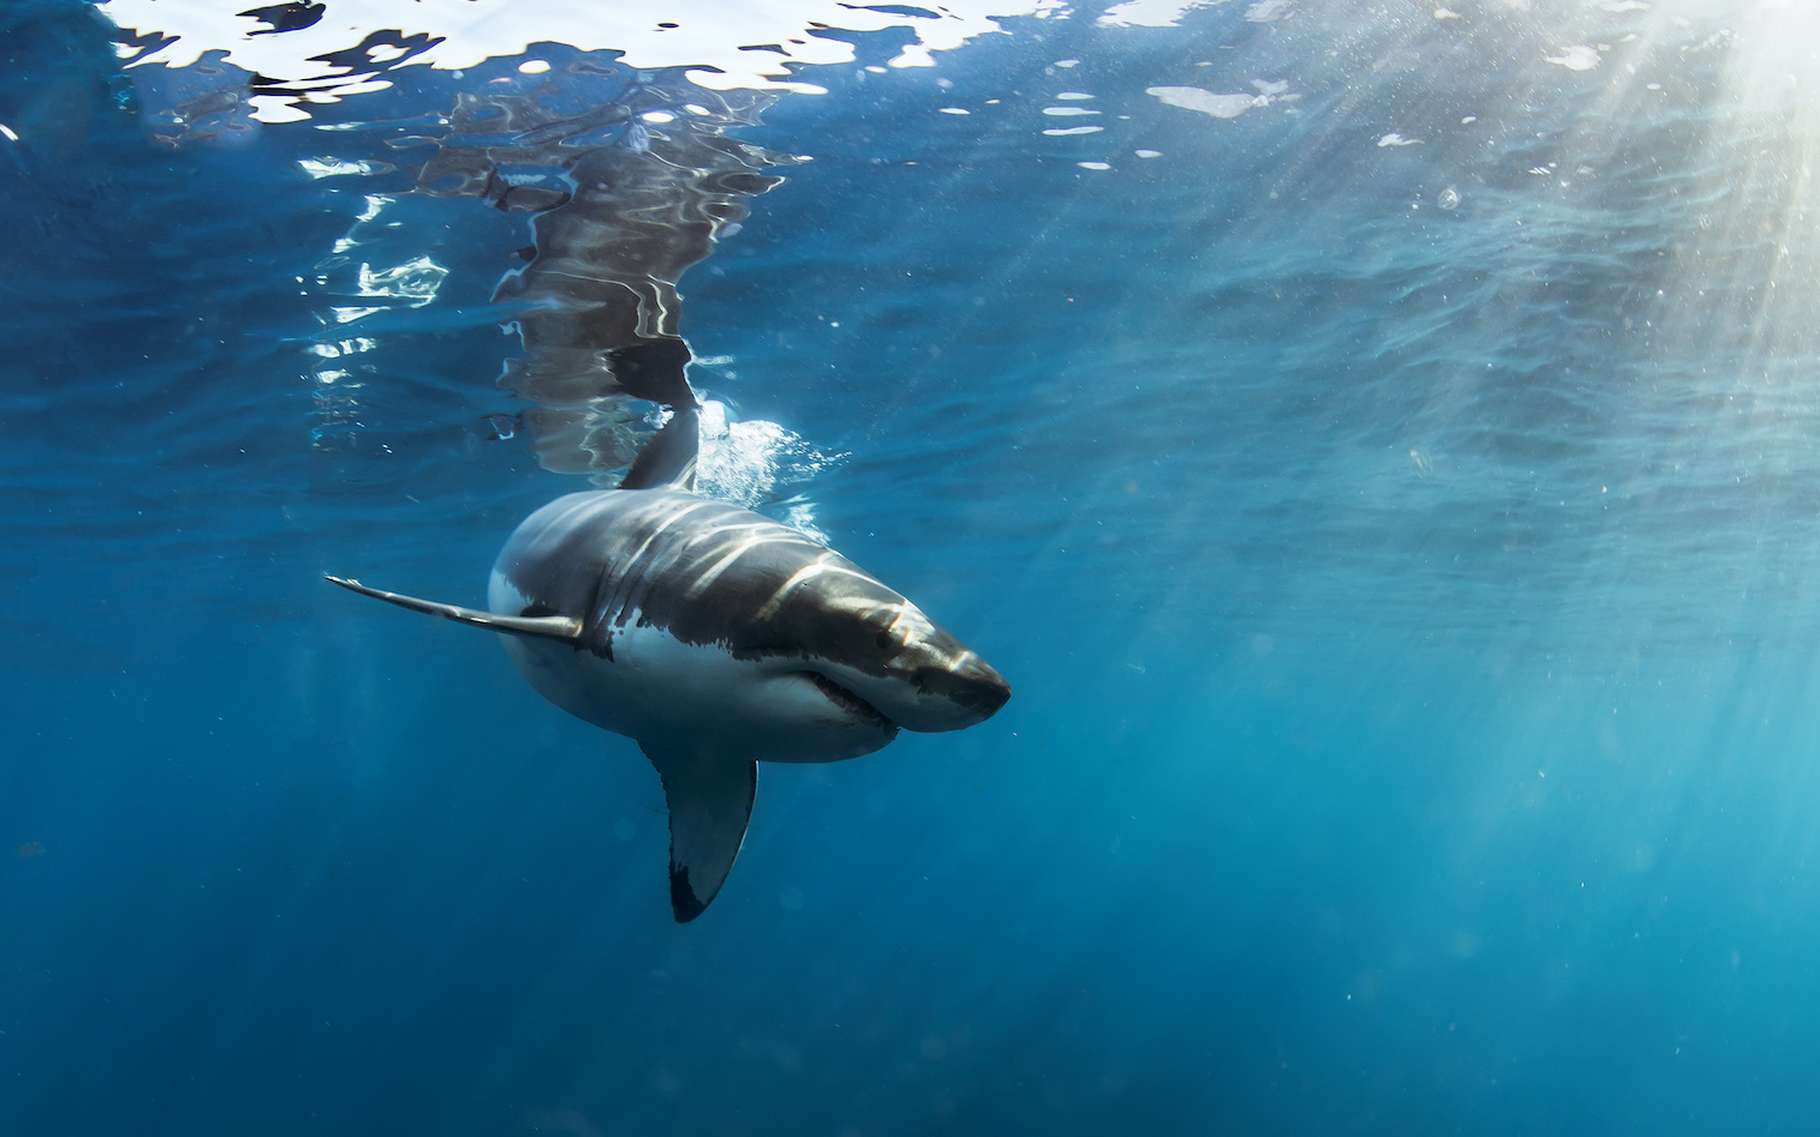 Le Grand requin blanc, c’est un animal impressionnant. Un puissant prédateur qui a développé une forme de vie sociale. Sans doute pour capturer encore plus de proies. La preuve que le grand requin blanc n’est pas si bête. © willyam, Adobe Stock